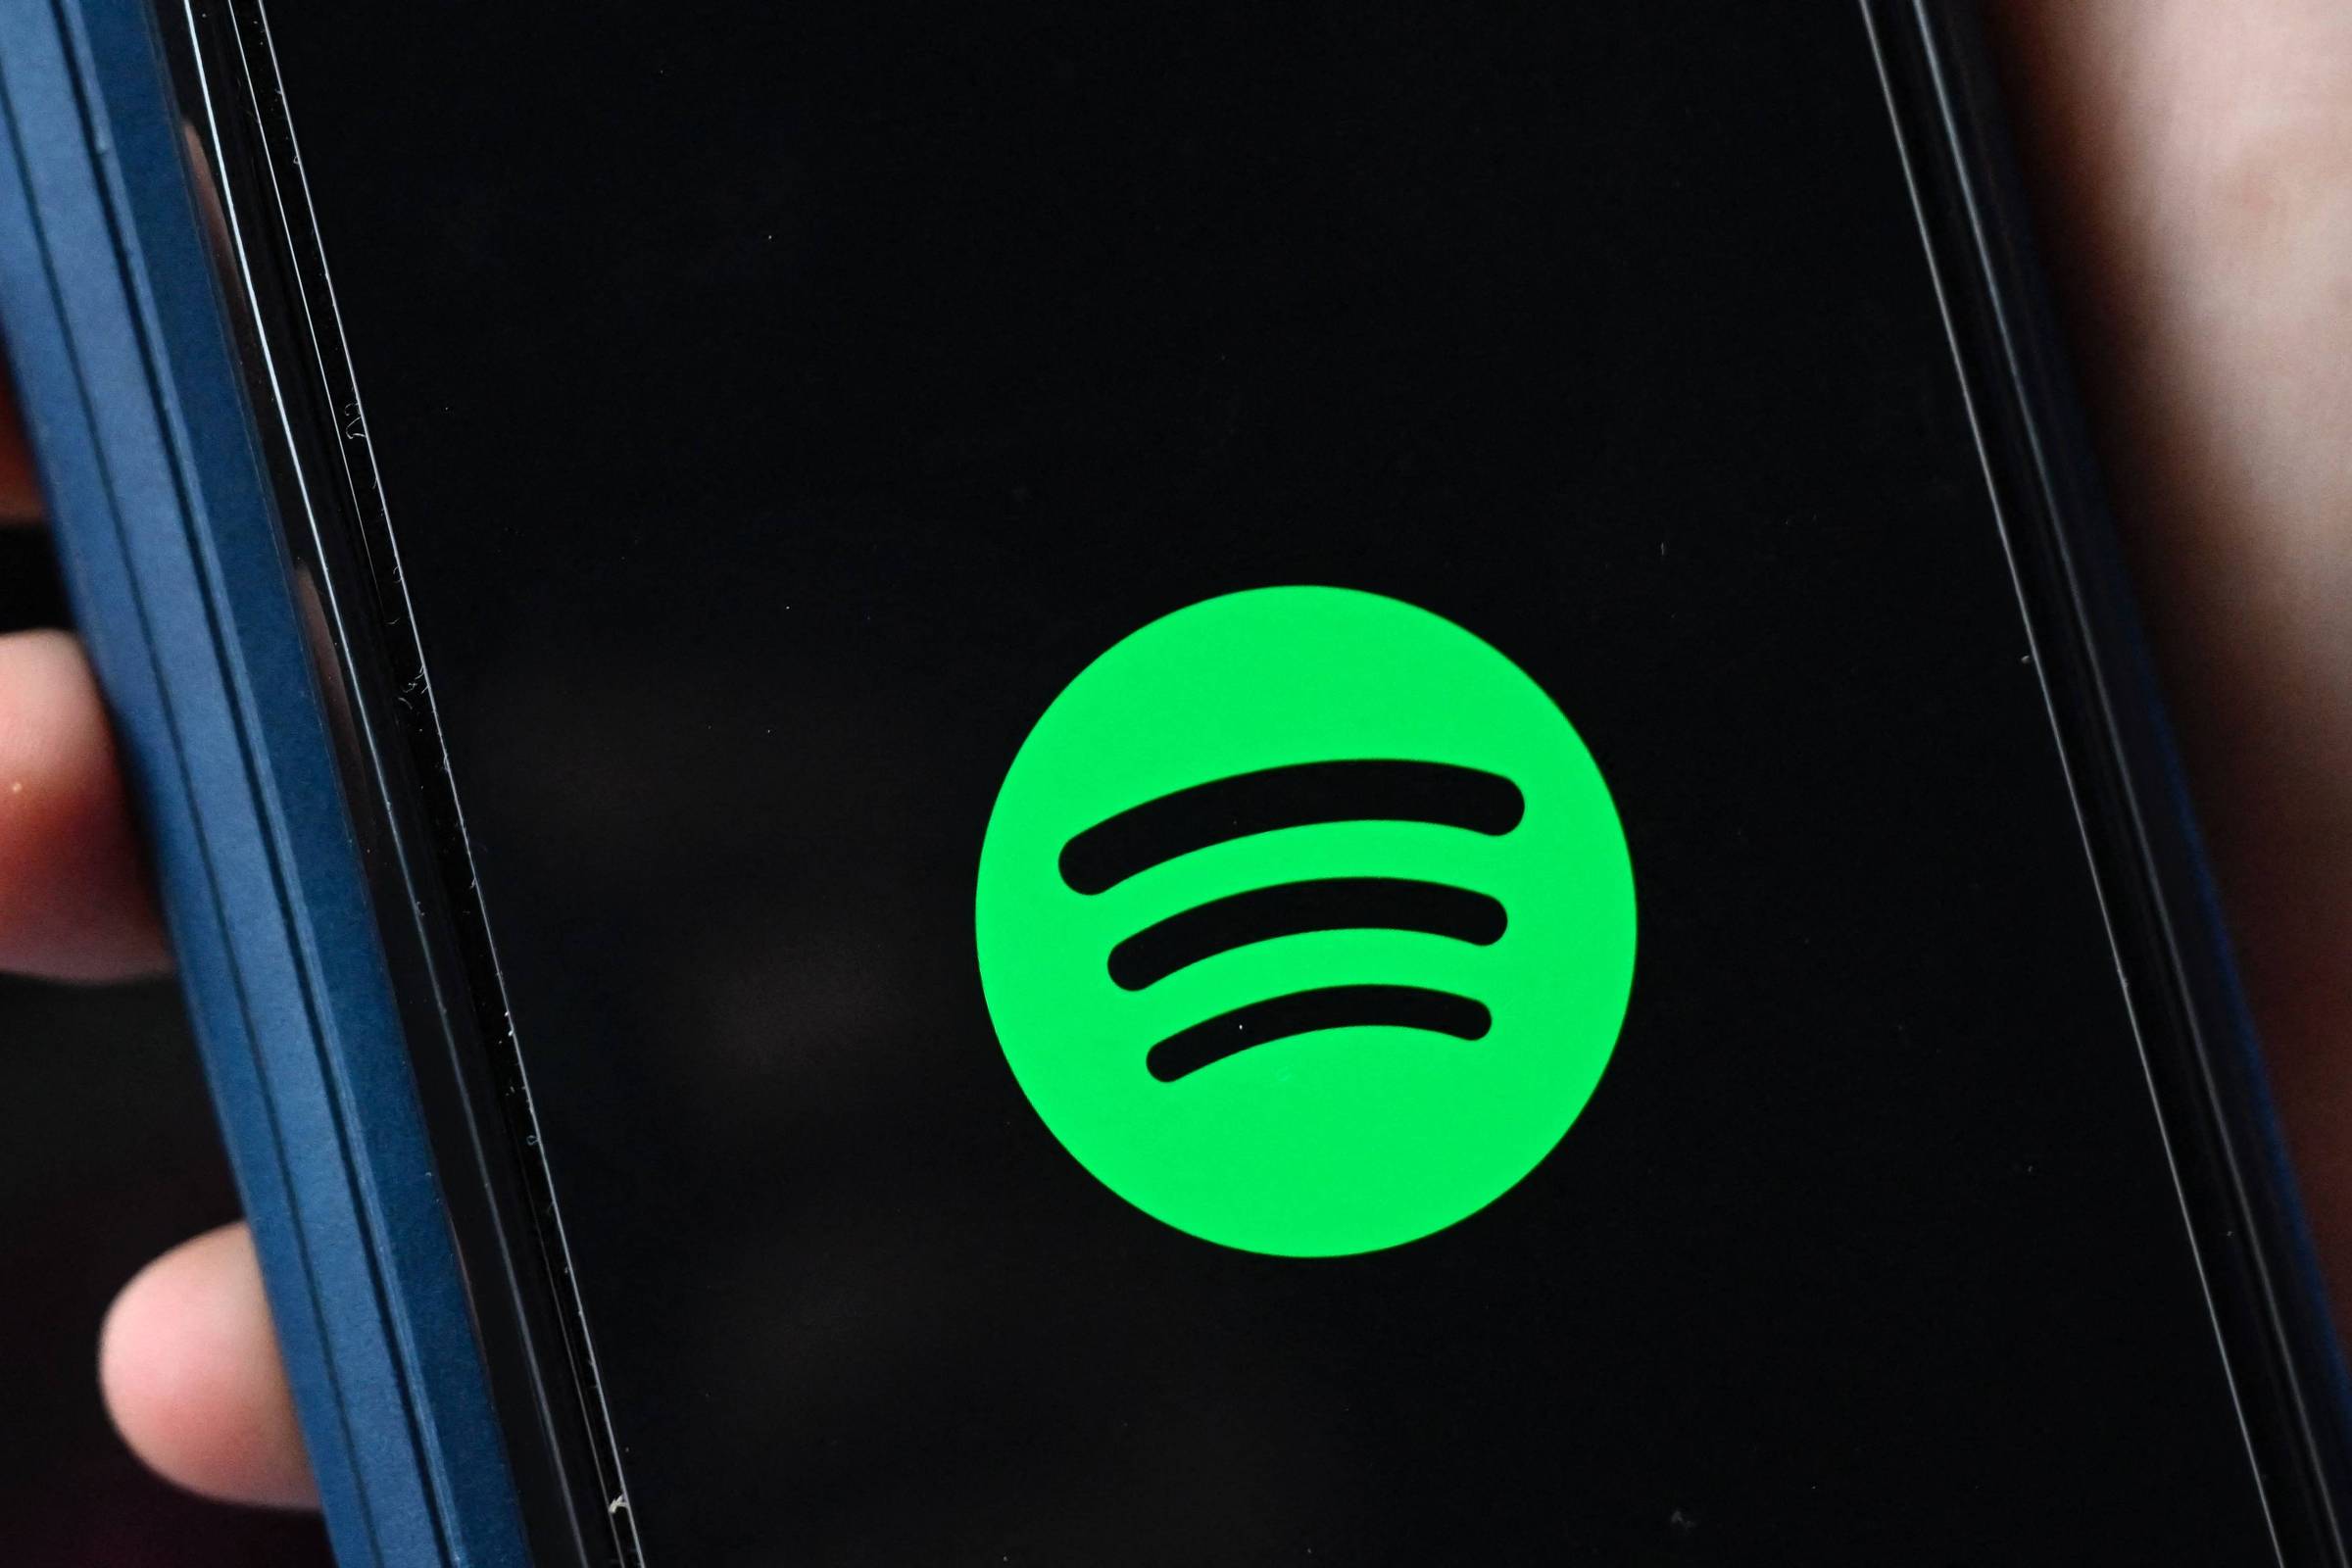 Spotify atualiza preços e junto corrige os valores dos planos de